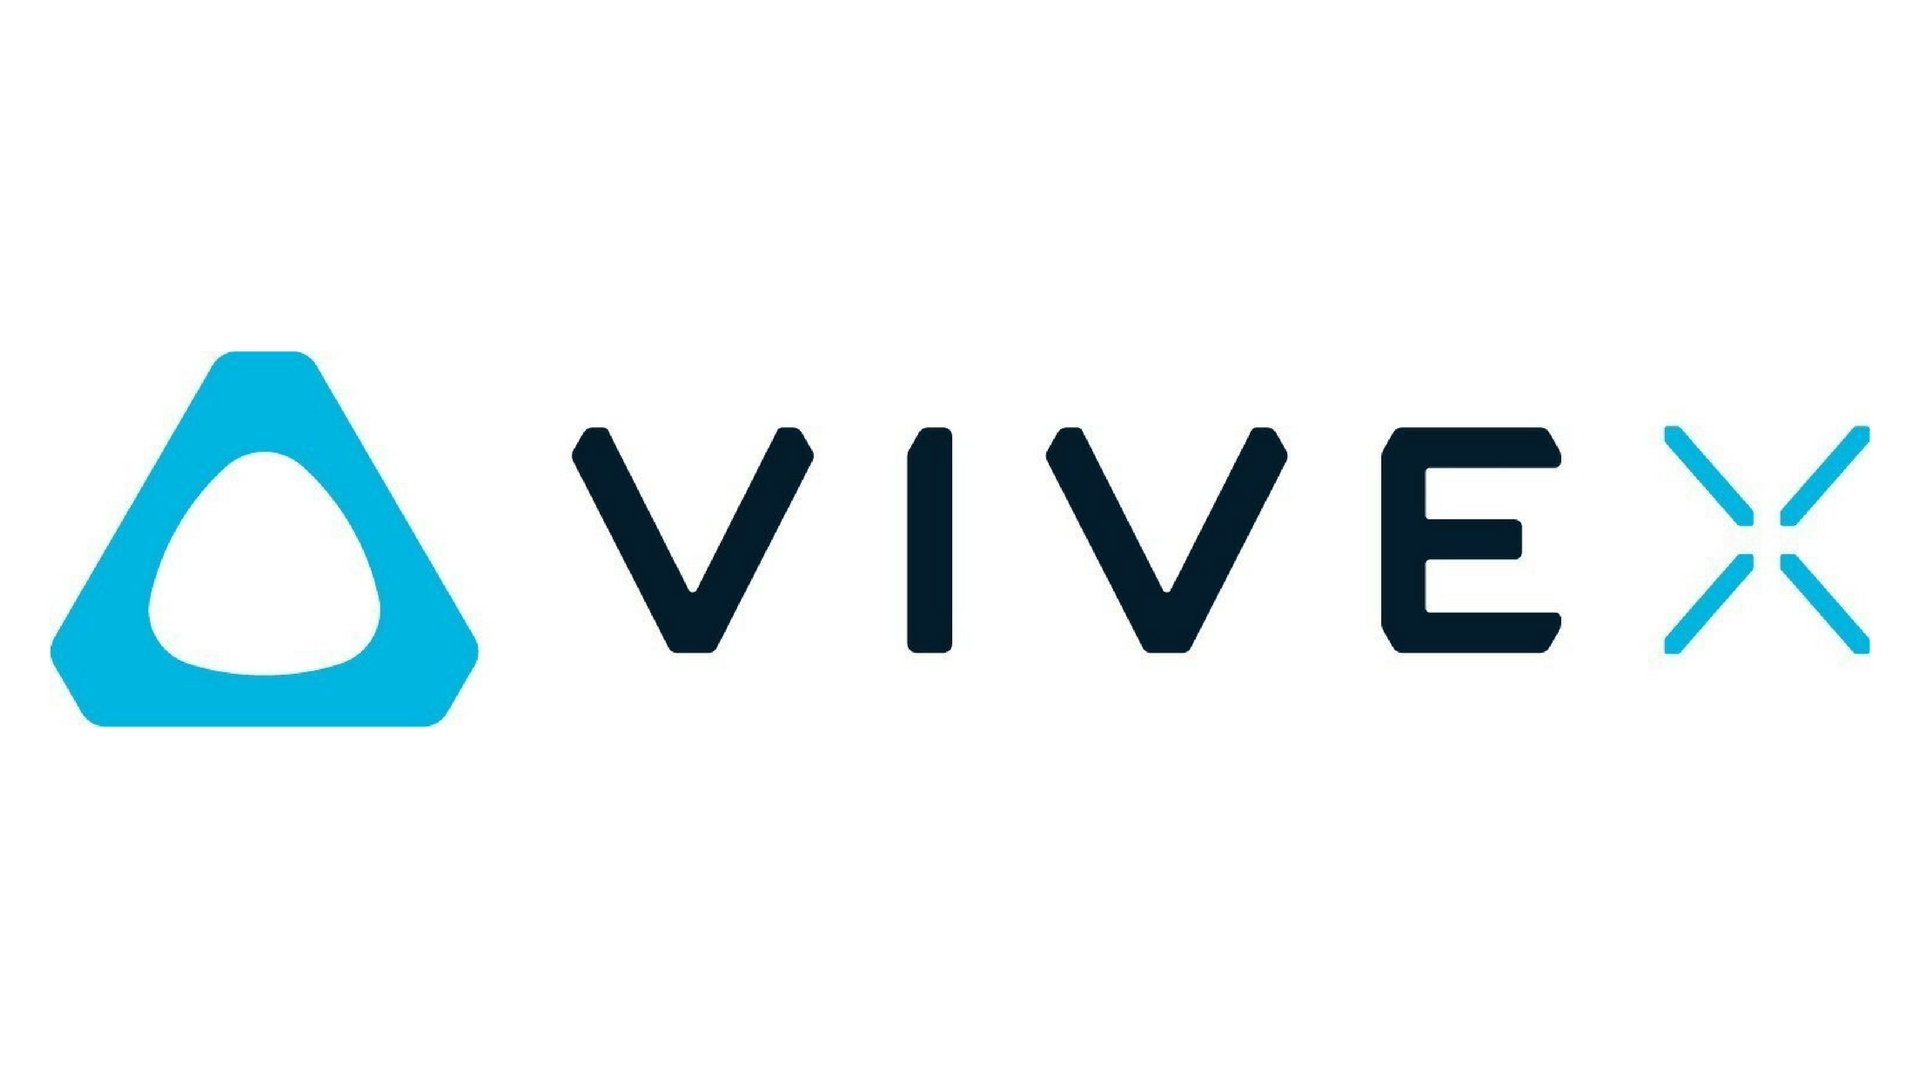 VR/AR accelerator program HTC Vive X